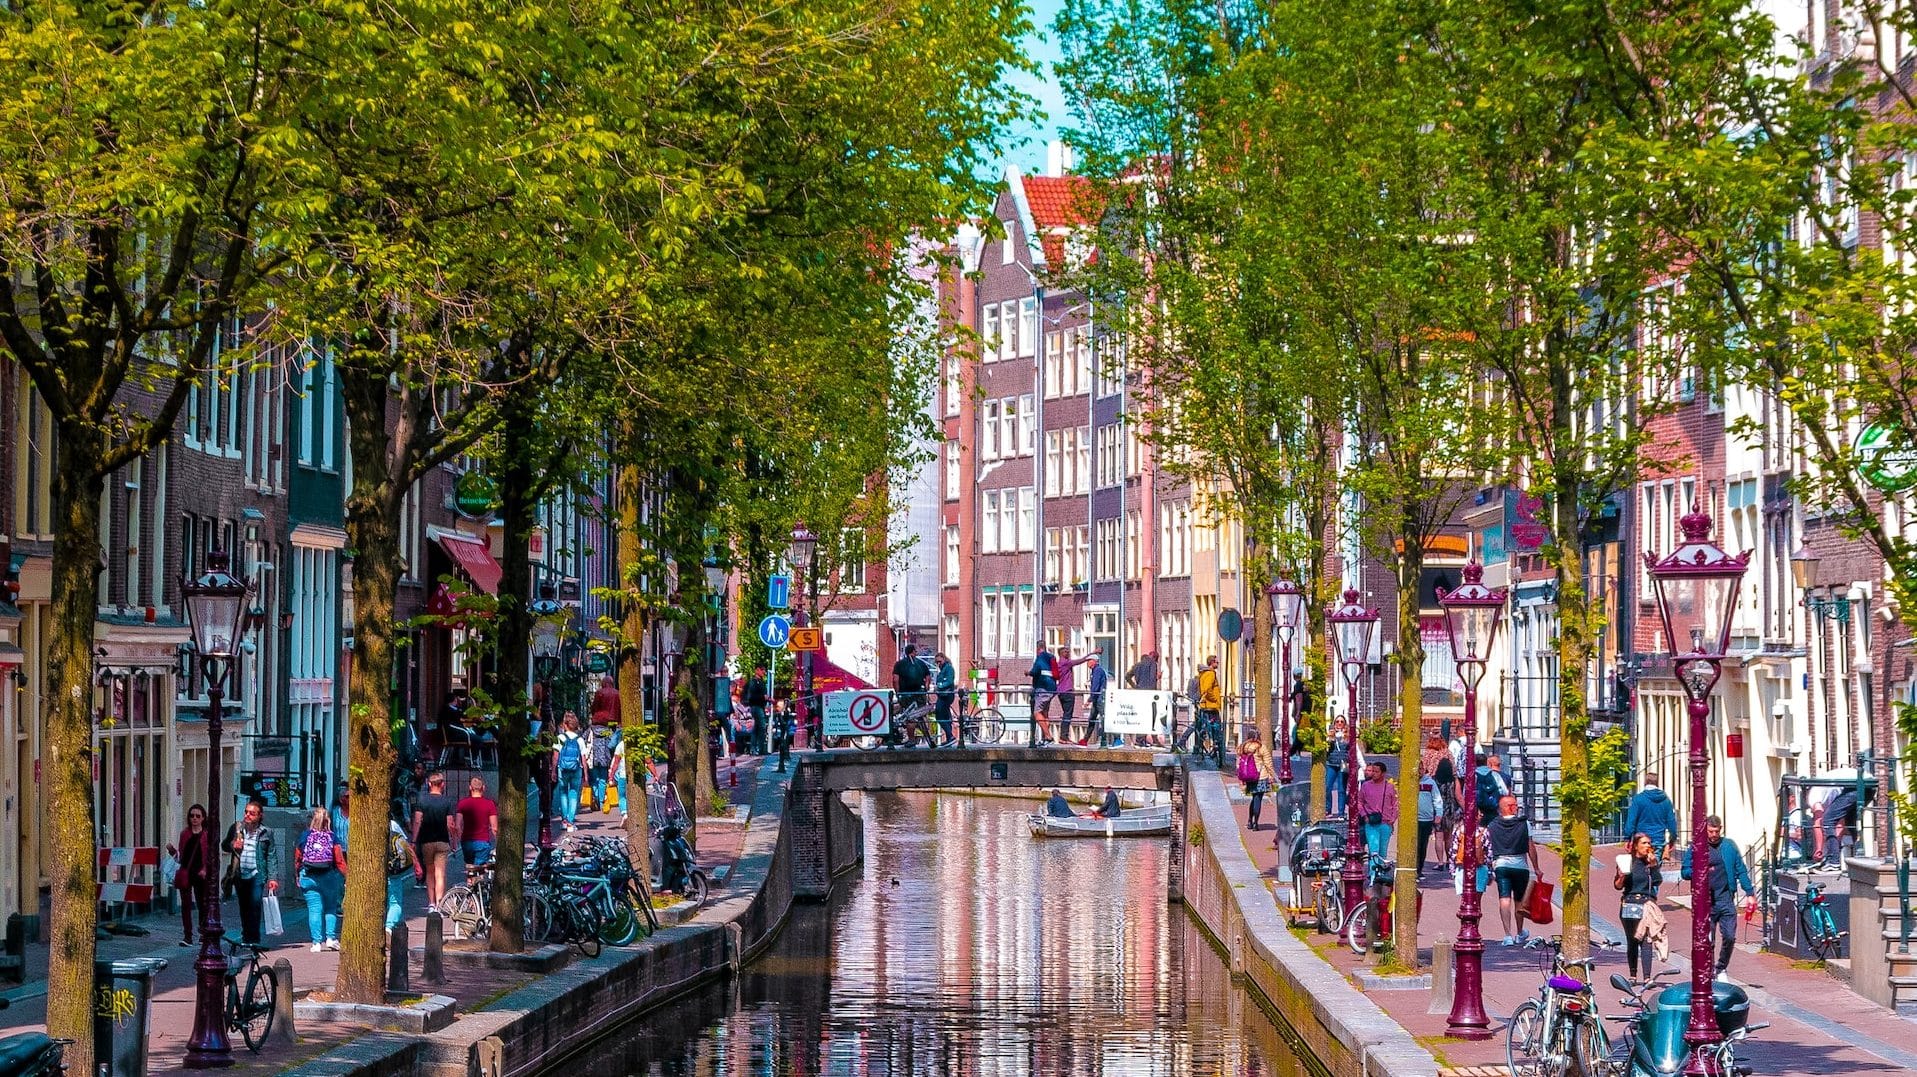 Conosciuto per le sue boutique e i suoi canali, Jordaan è un'ottima opzione in cui soggiornare ad Amsterdam.